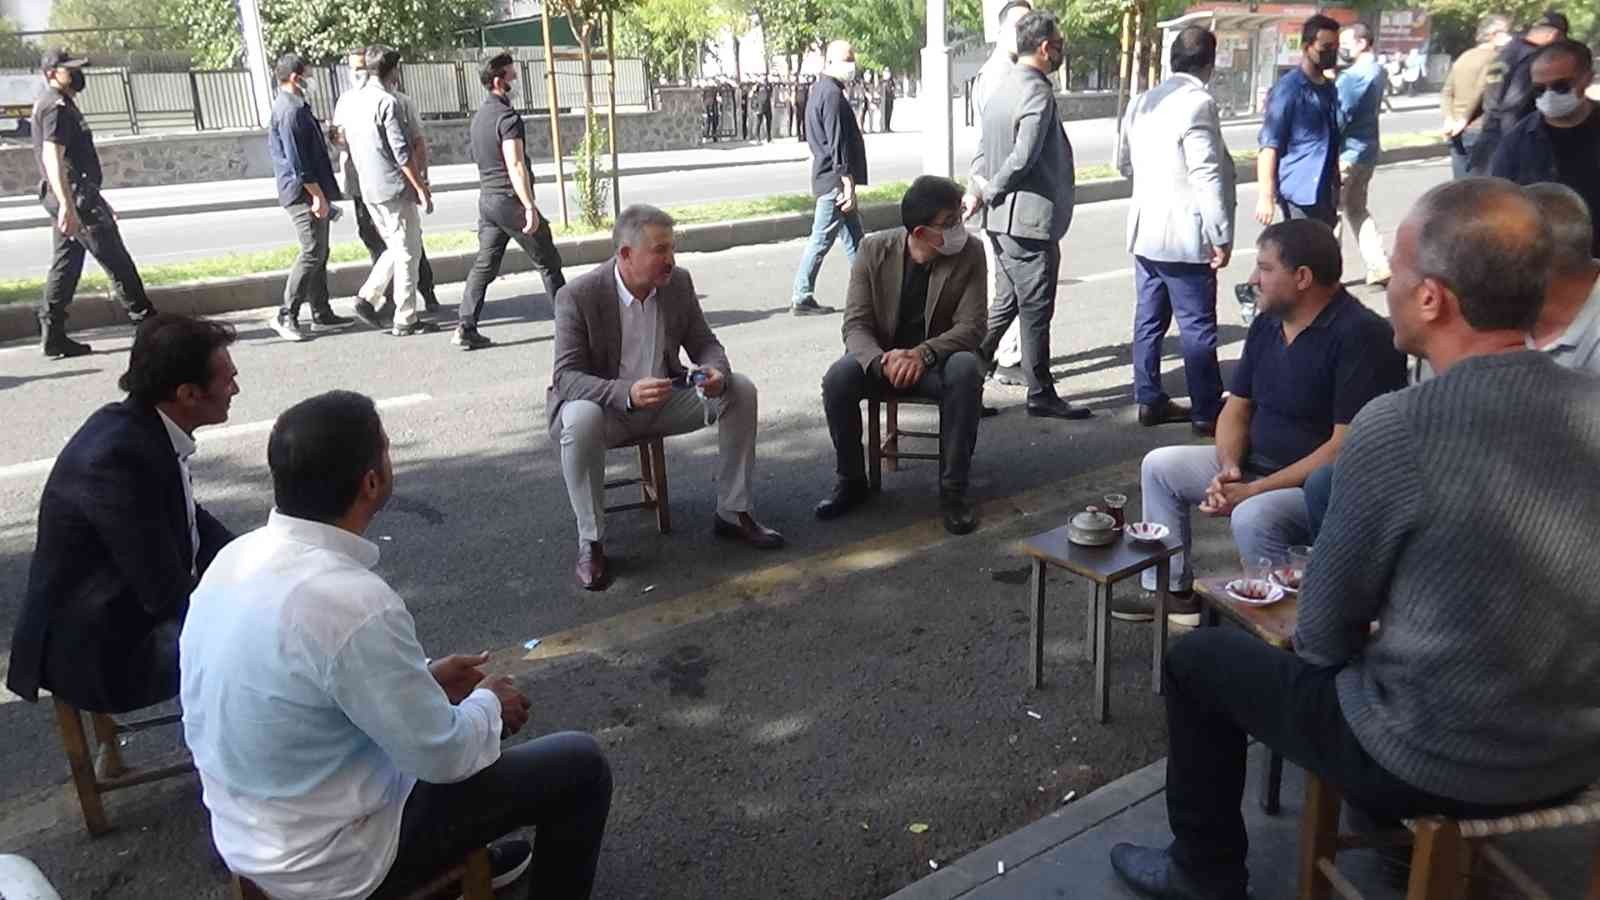 Diyarbakır Emniyet Müdürü Aşkın, vatandaşlarla çay içip sohbet etti #diyarbakir